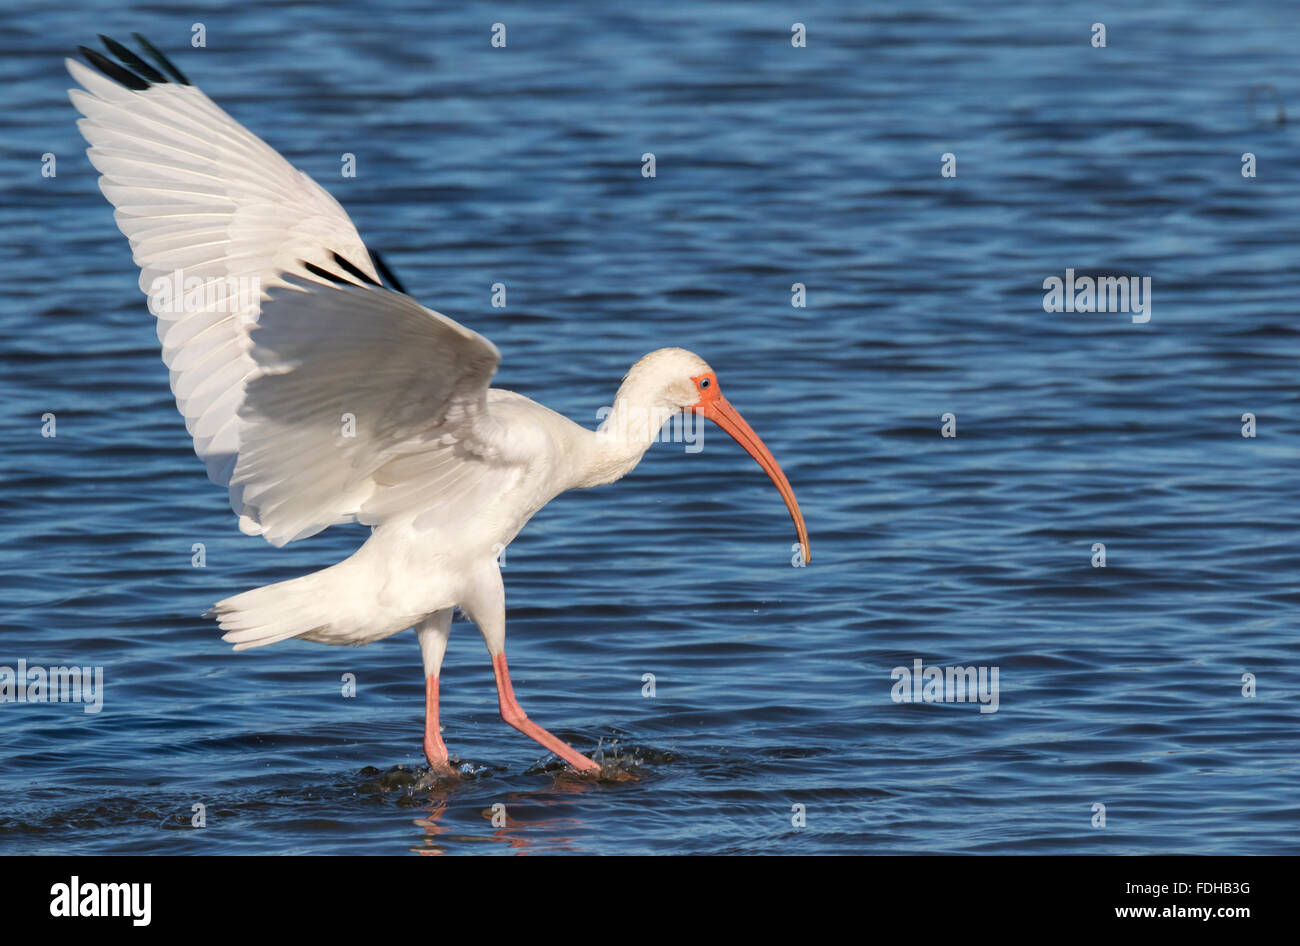 American white ibis (Eudocimus albus), Galveston, Texas, USA. Stock Photo